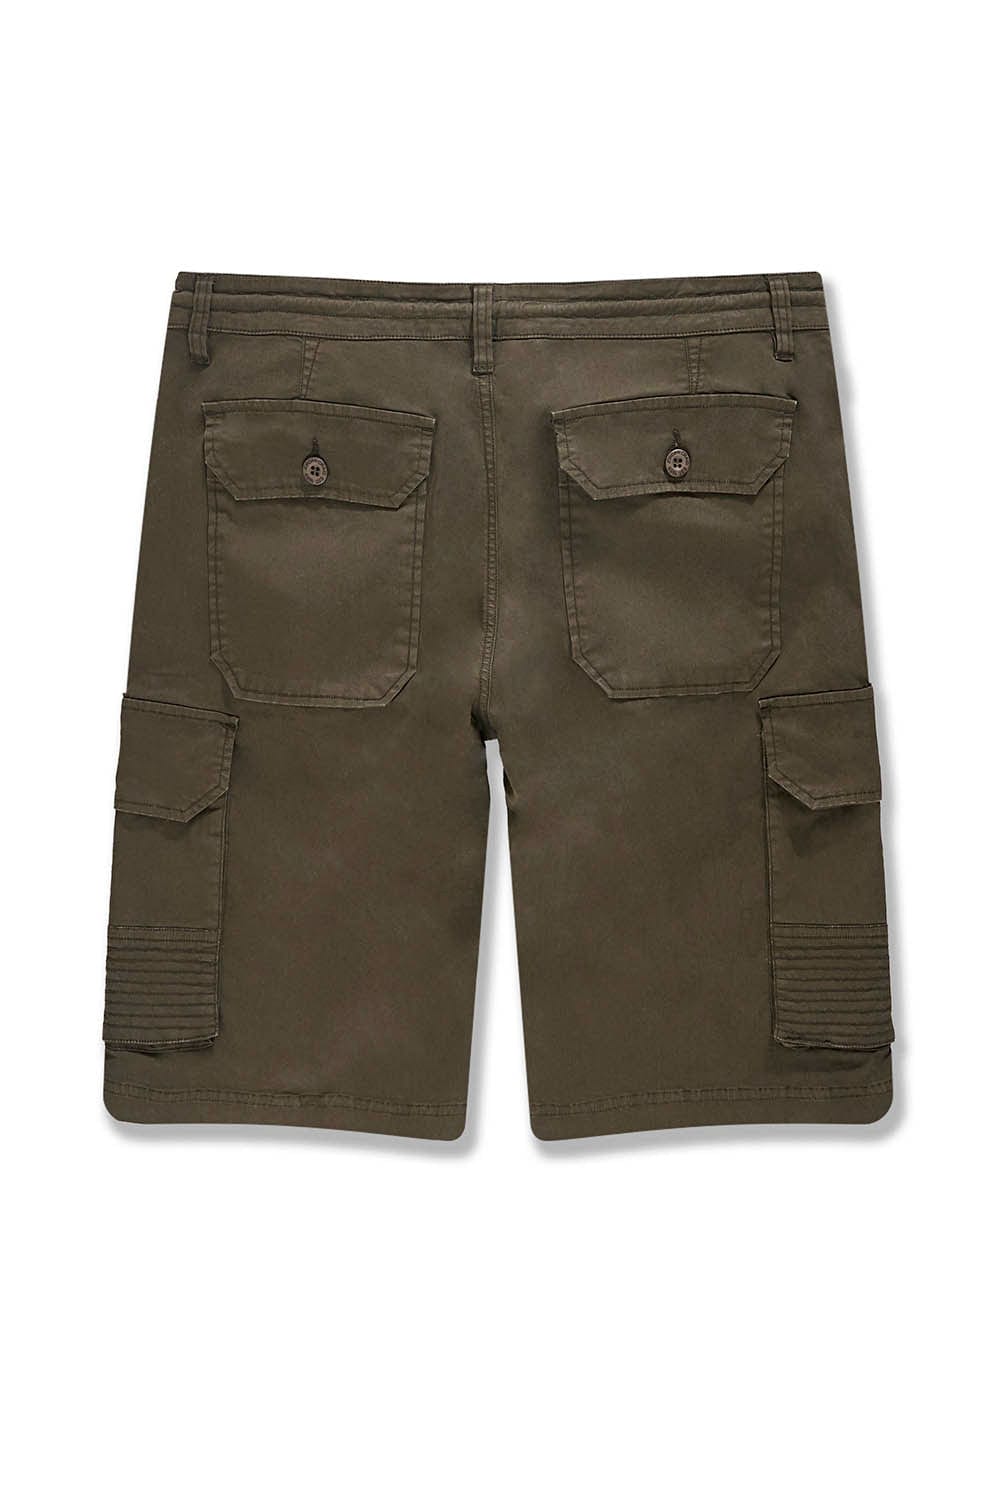 BB OG - Ripstop Cargo Shorts